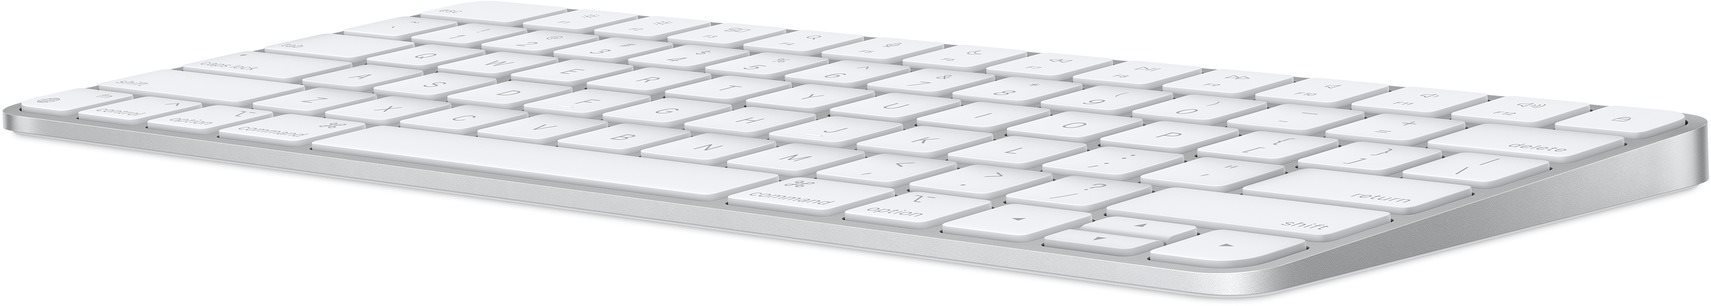 Klávesnica Apple Magic Keyboard – HU Bočný pohľad